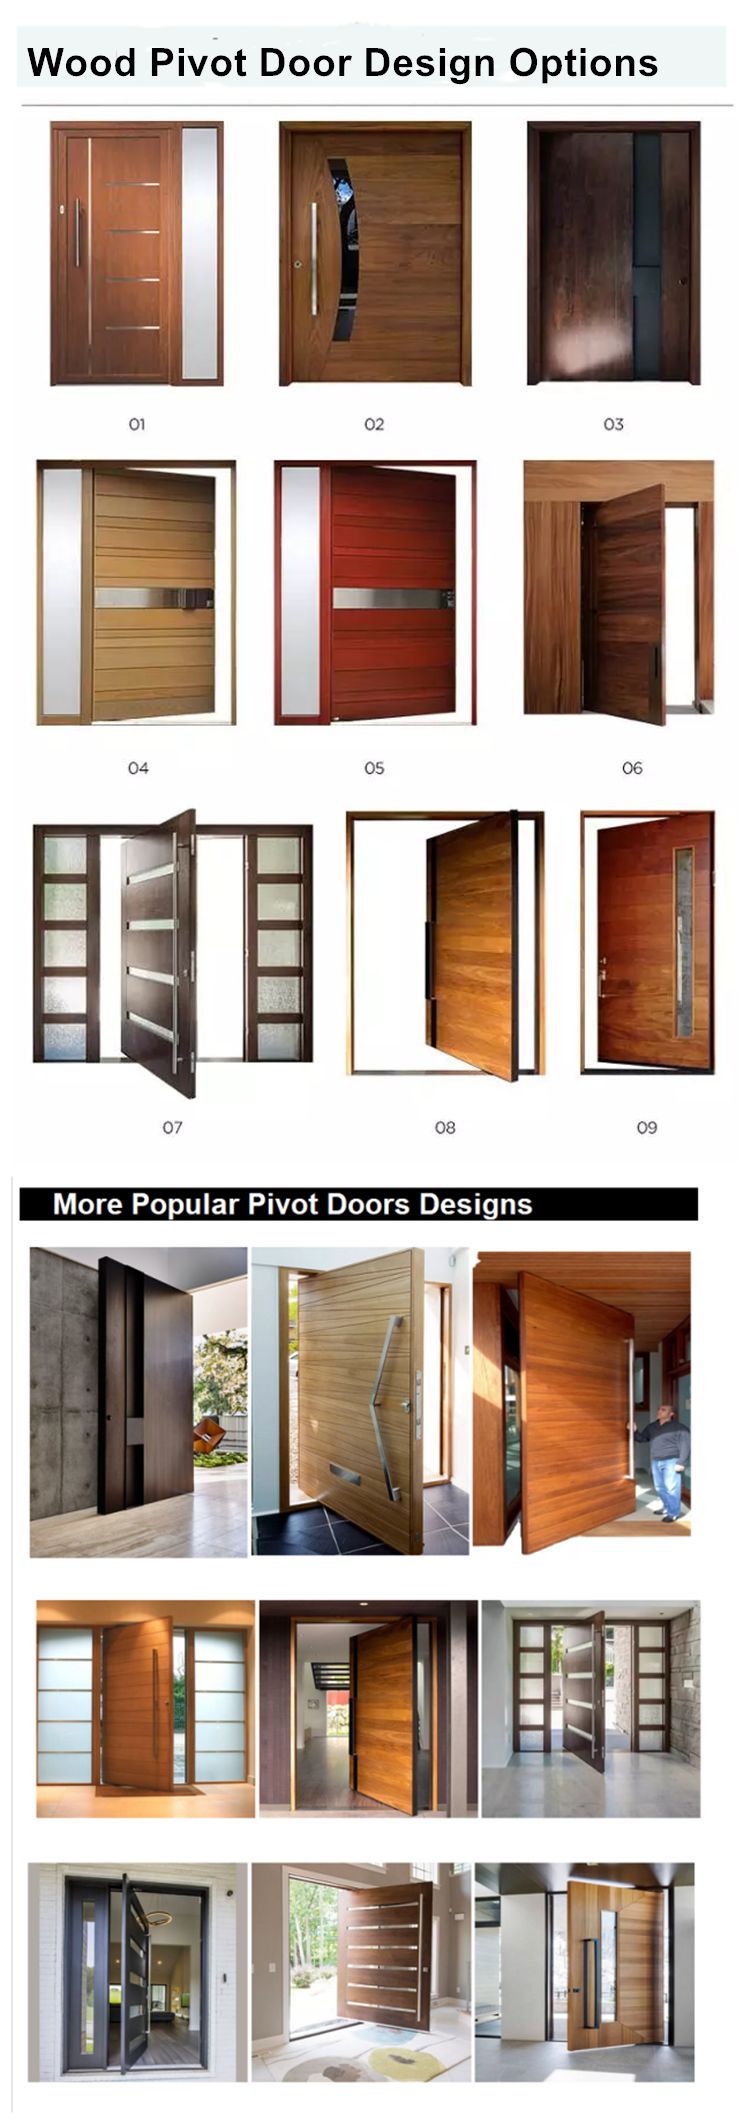 wood pivot door designs